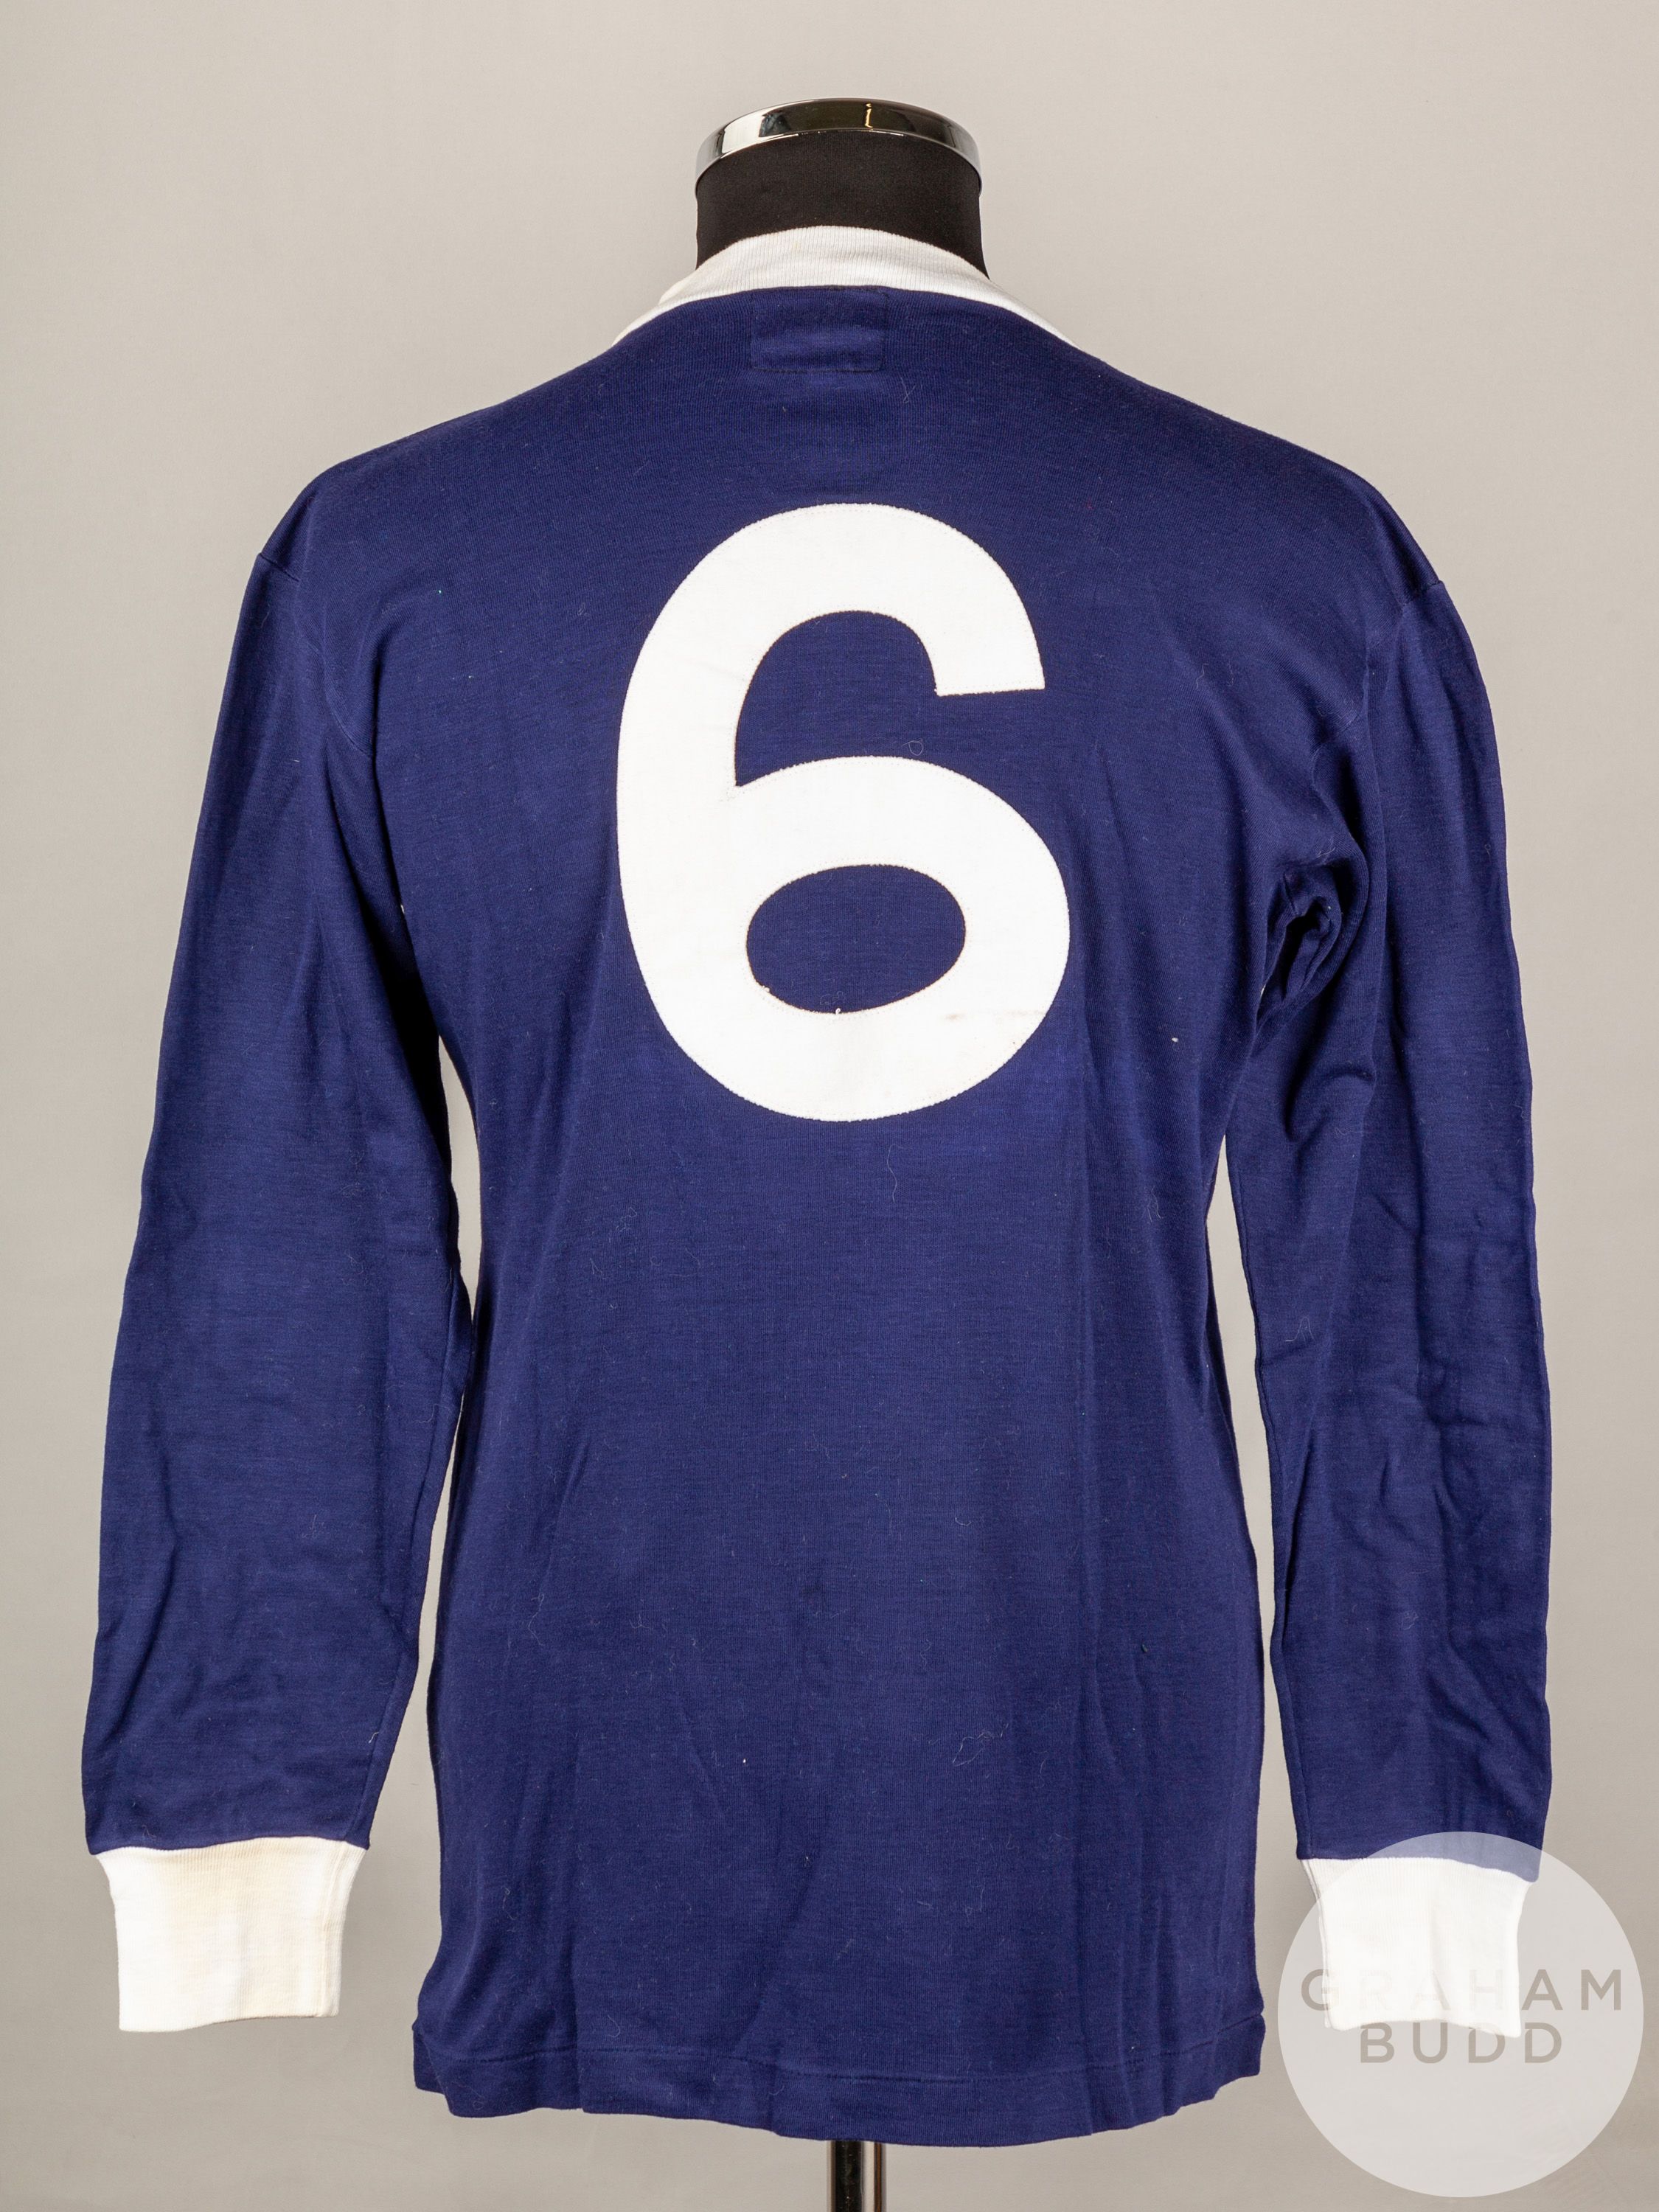 John Greig blue Scotland No.6 Scotland v. England match worn long-sleeved shirt - Image 2 of 4